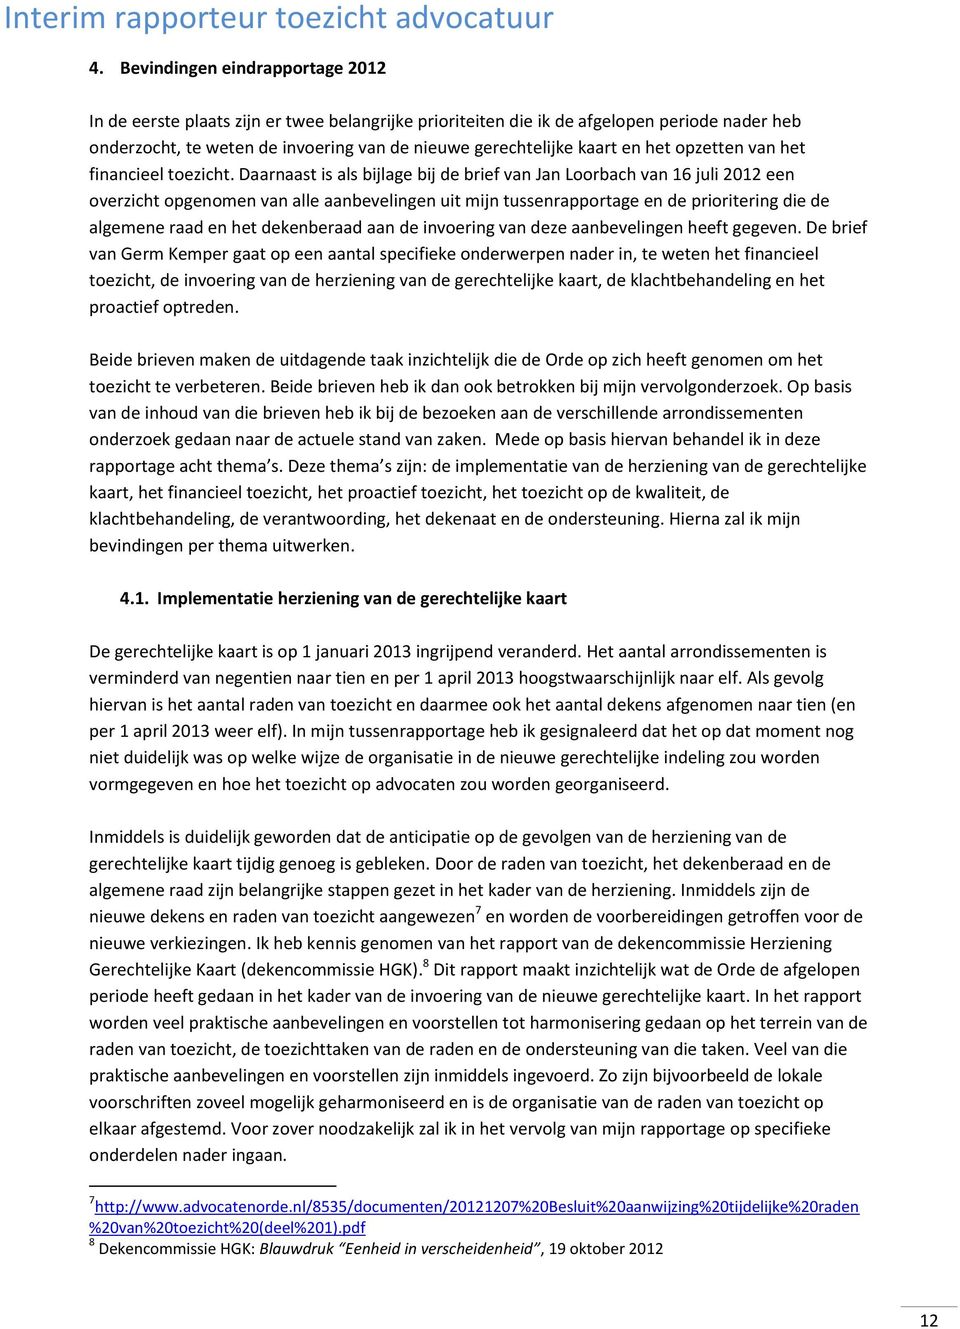 Daarnaast is als bijlage bij de brief van Jan Loorbach van 16 juli 2012 een overzicht opgenomen van alle aanbevelingen uit mijn tussenrapportage en de prioritering die de algemene raad en het